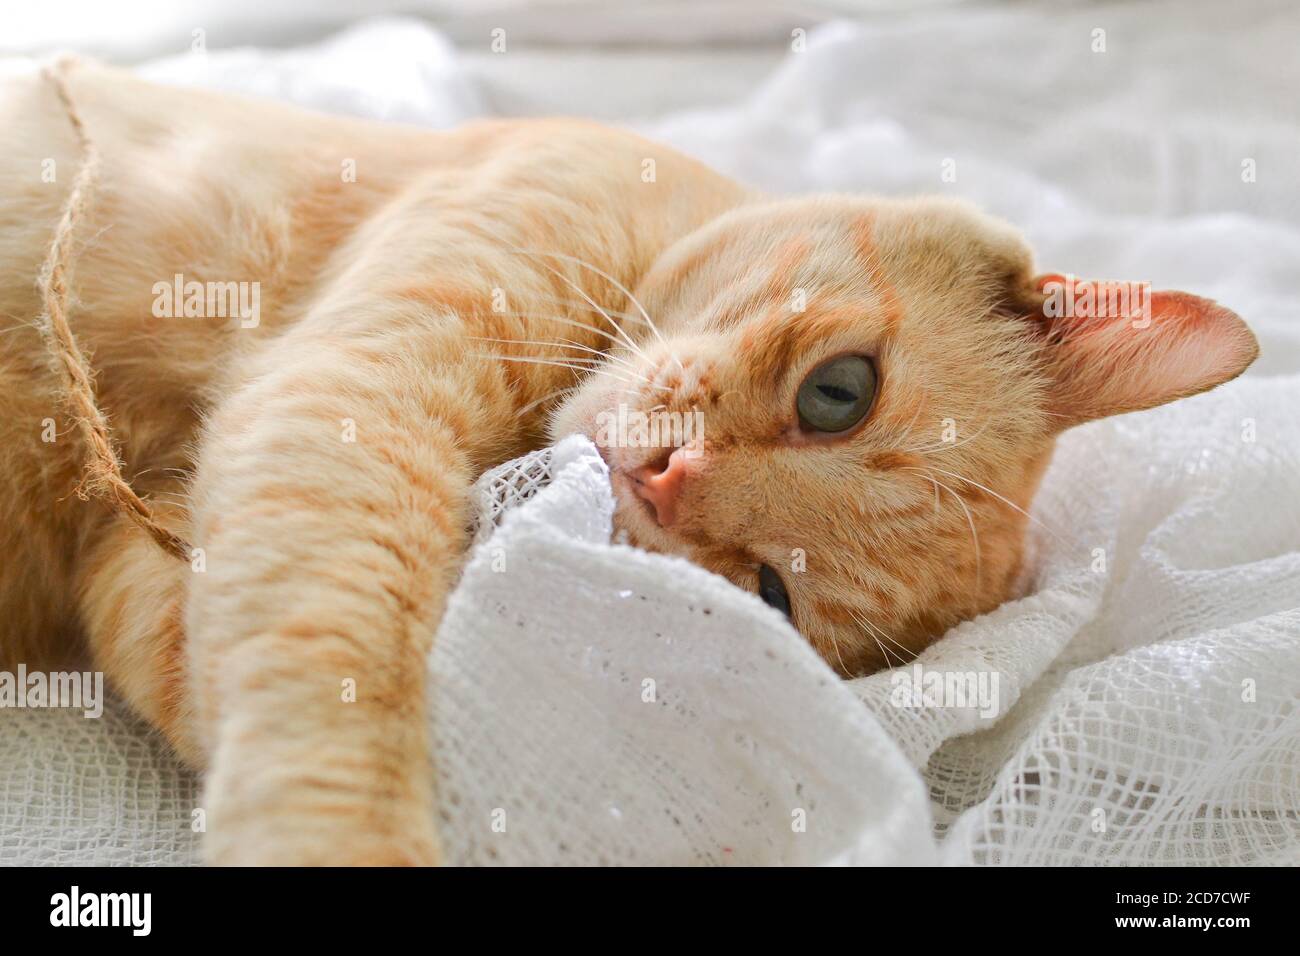 Hellrote Katze auf einer weißen Decke, Licht aus dem Fenster. Eine niedliche Ingwerkatze liegt unter einer weißen Decke auf der Fensterbank, auf dem Bett. Stockfoto